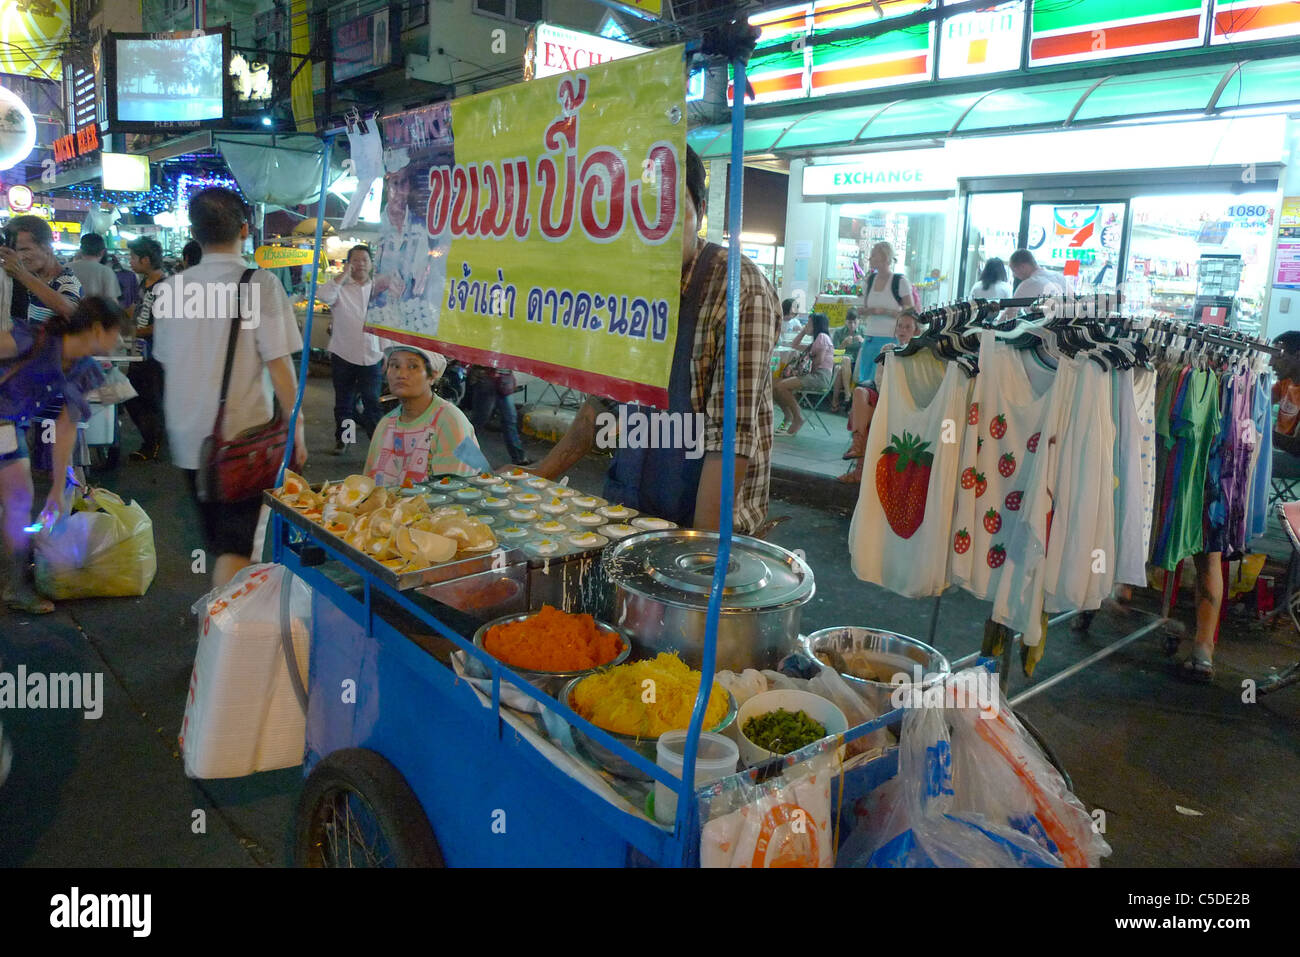 Thailandia Khao San Road, Bangkok. Bilancio area turistica. Cucina di strada in stallo. Foto di Sean Sprague Foto Stock